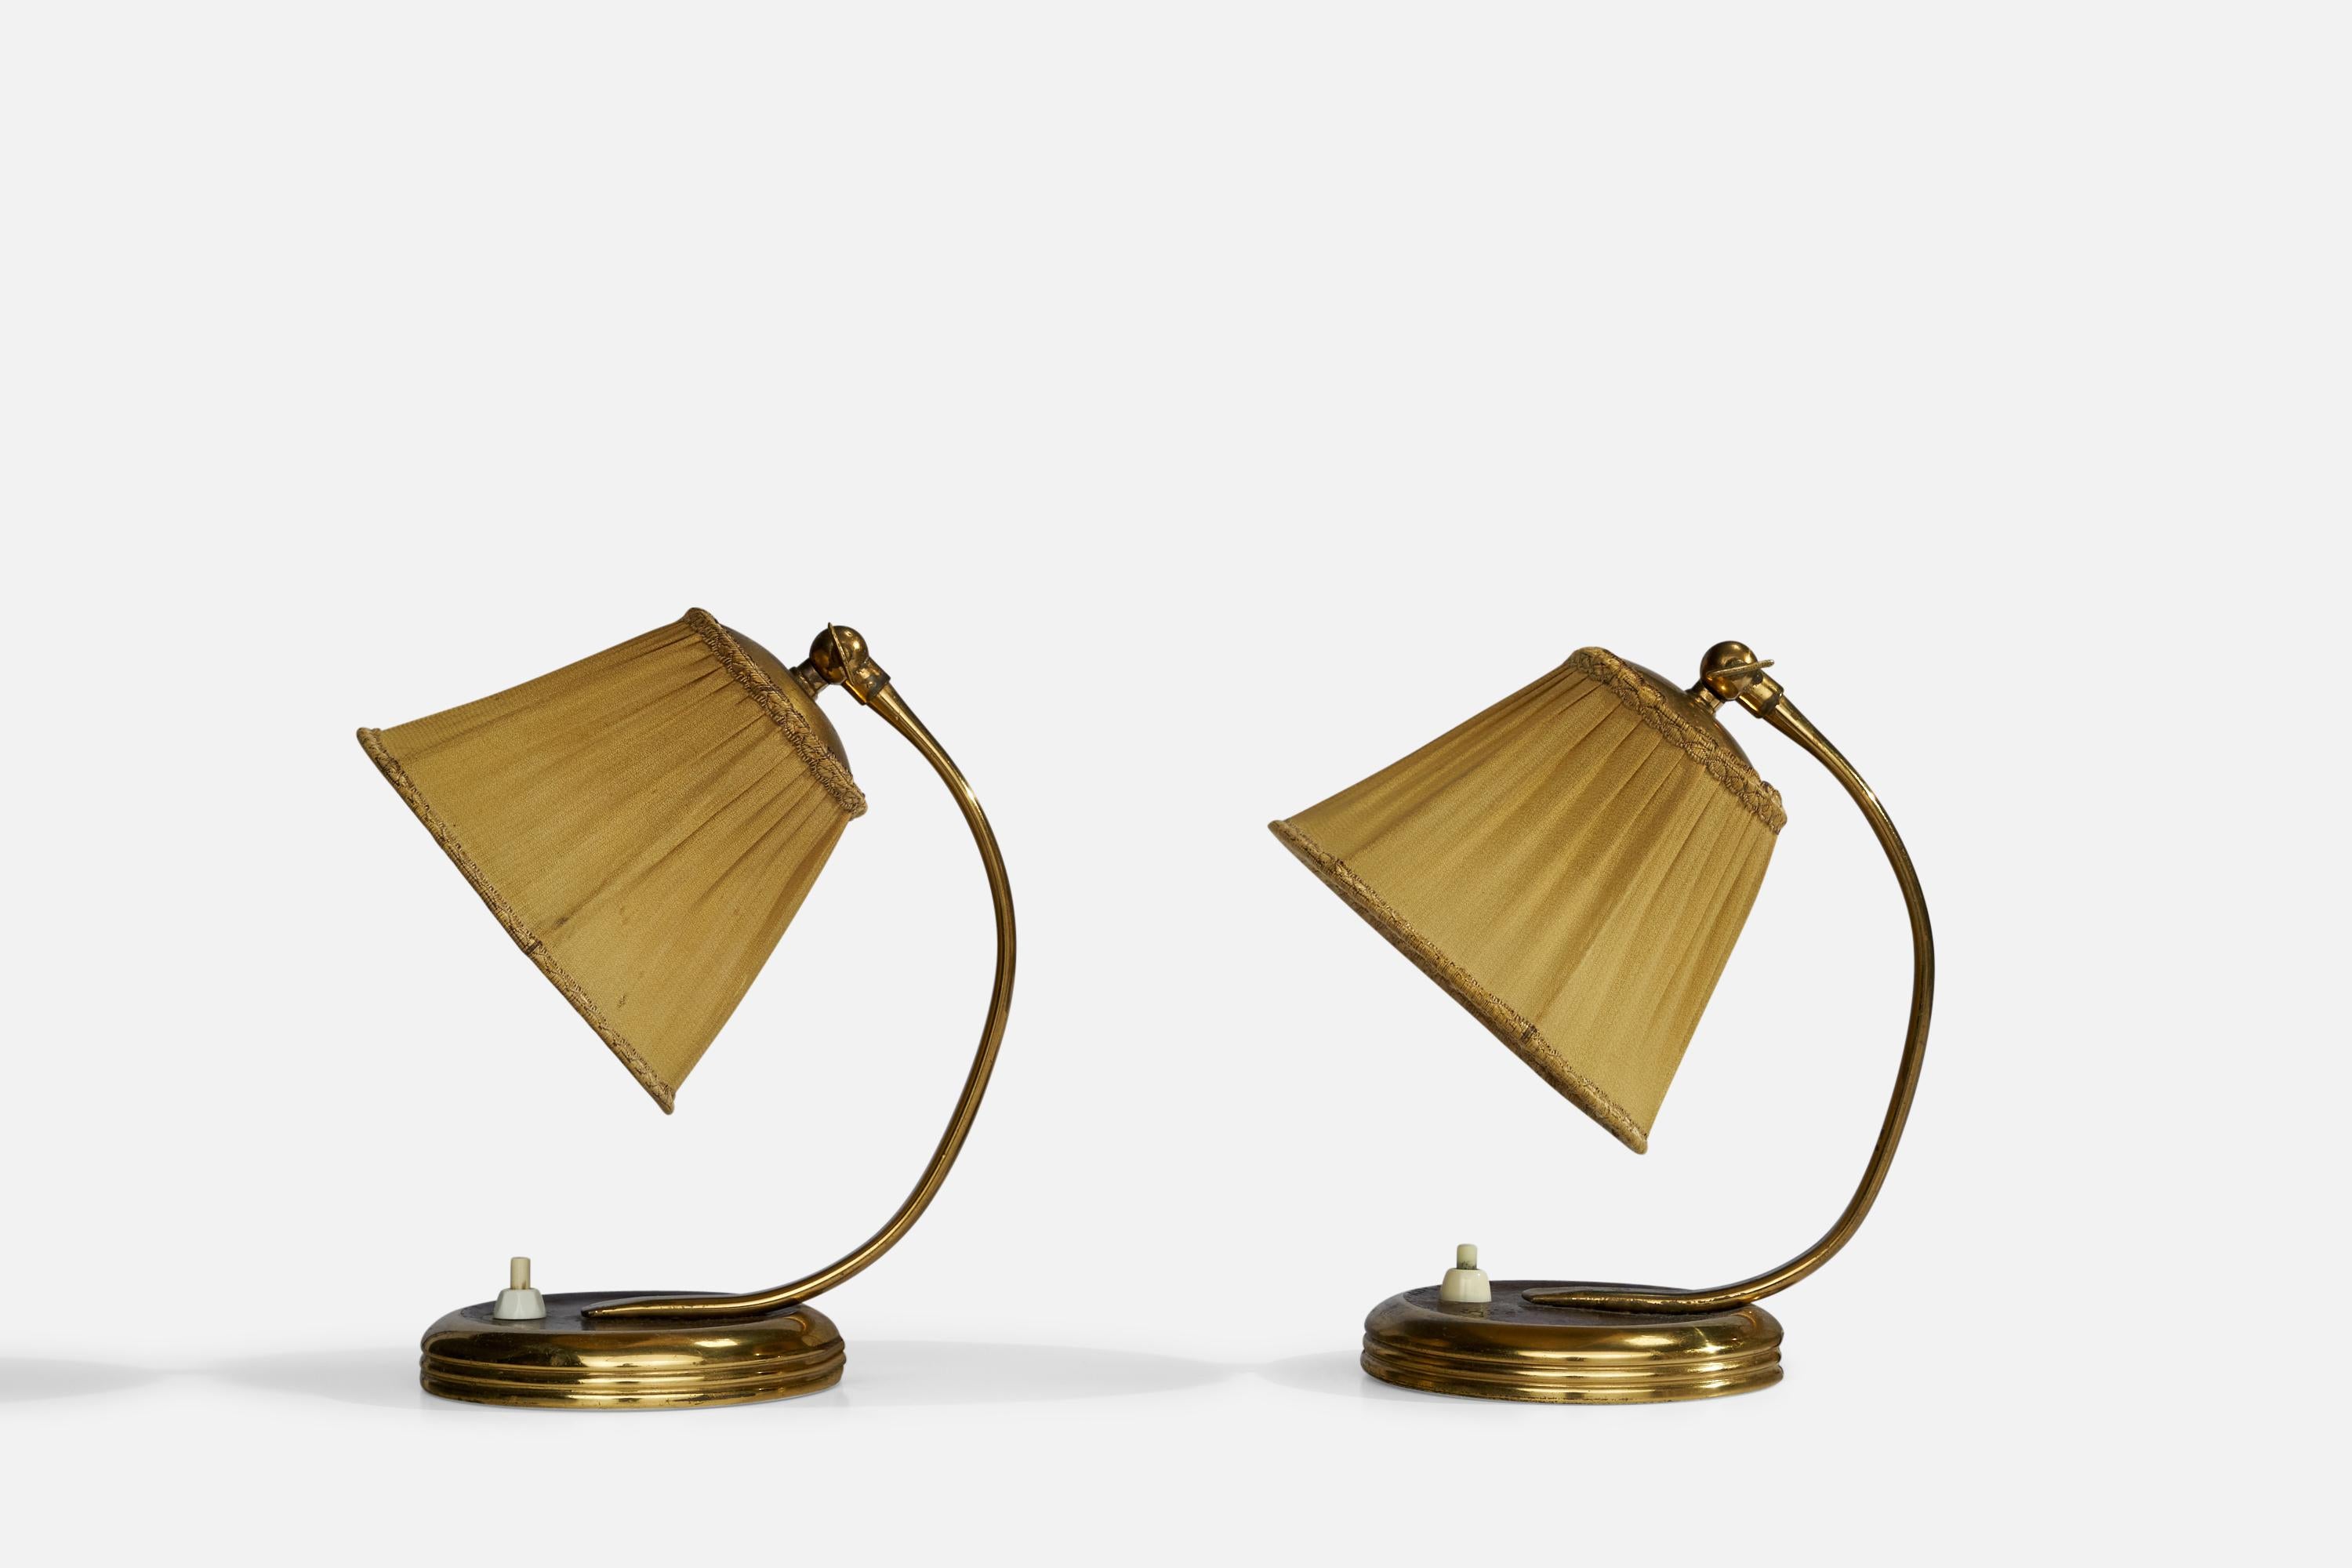 Ein Paar Tisch- oder Wandlampen aus Messing, braun lackiertem Metall und beigem Stoff, entworfen und hergestellt in Schweden, ca. 1940er Jahre.

Gesamtabmessungen (Zoll): 8,5